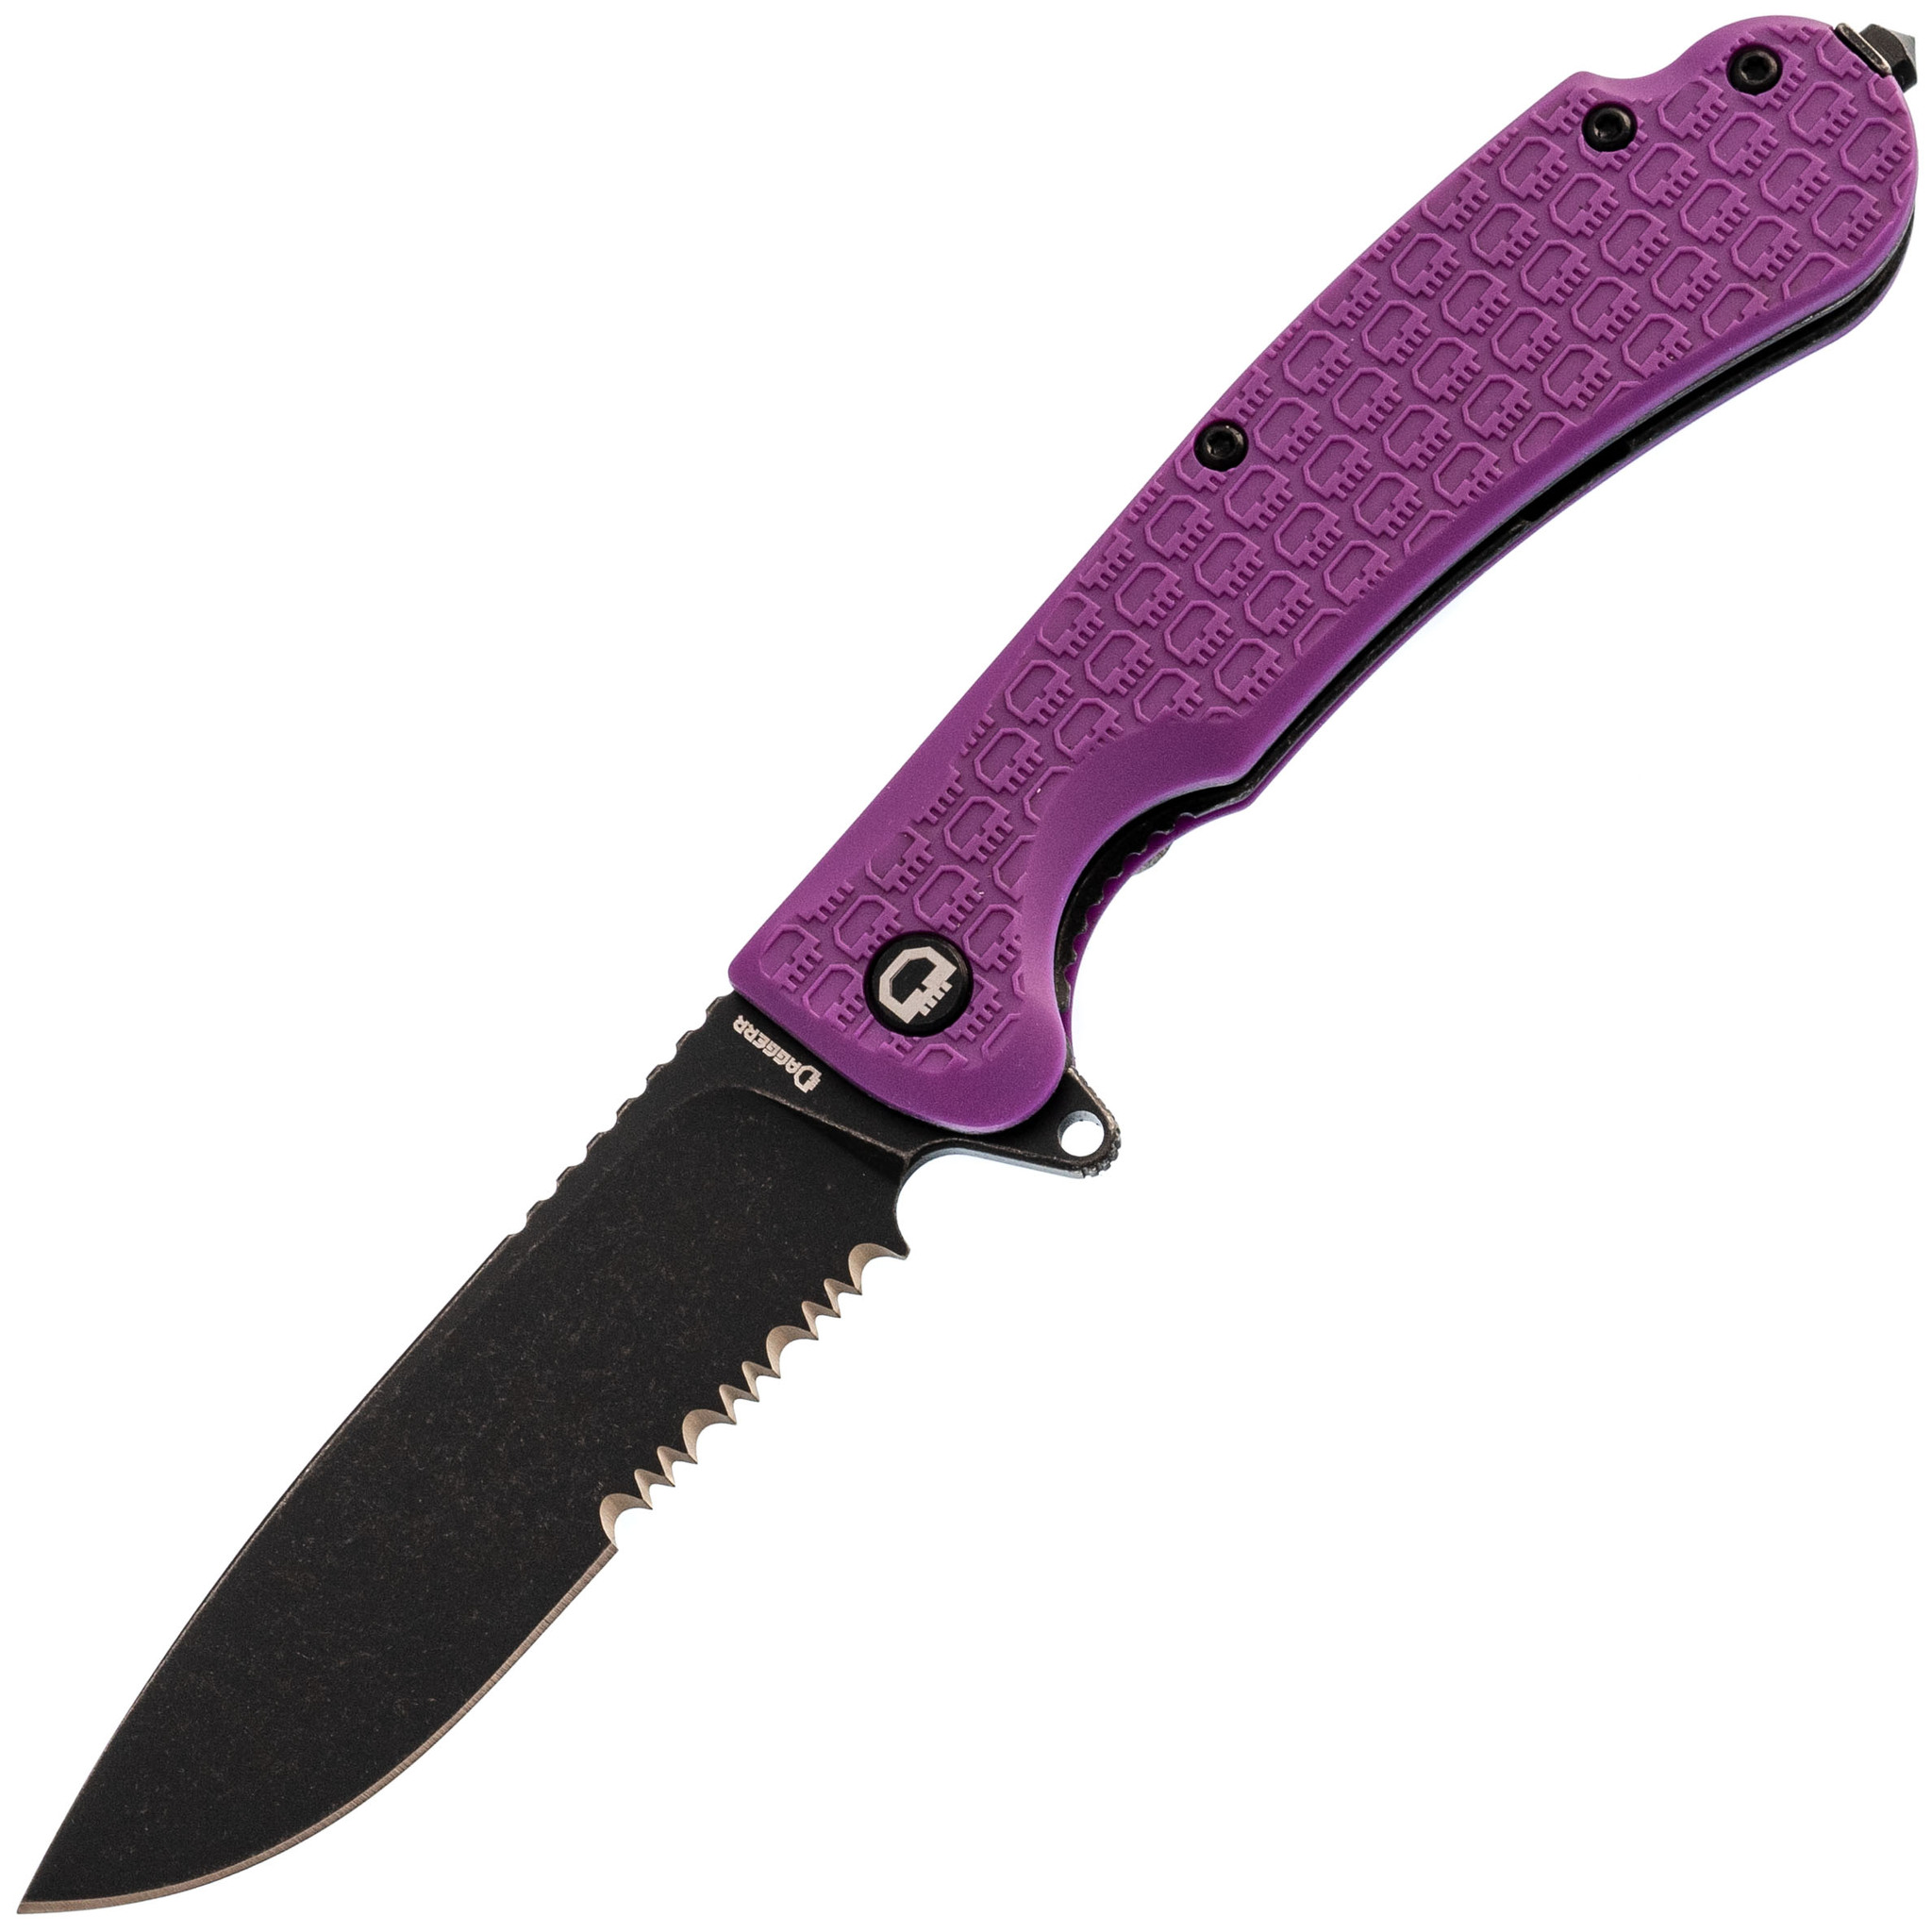   Daggerr Wocket Purple BW Serrated,  8Cr14MoV,  FRN